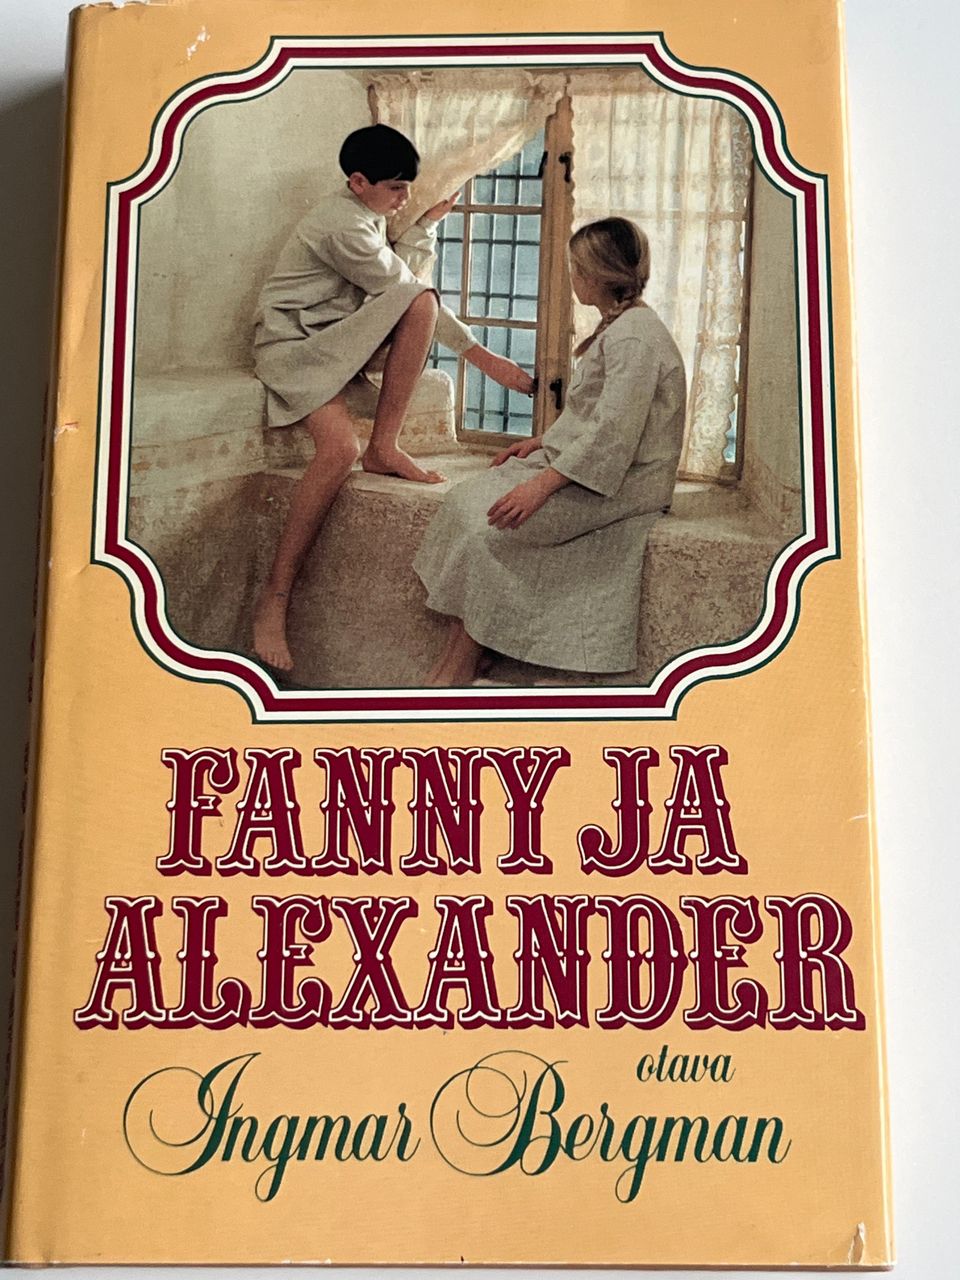 Ingmar Bergman Fanny ja Alexander